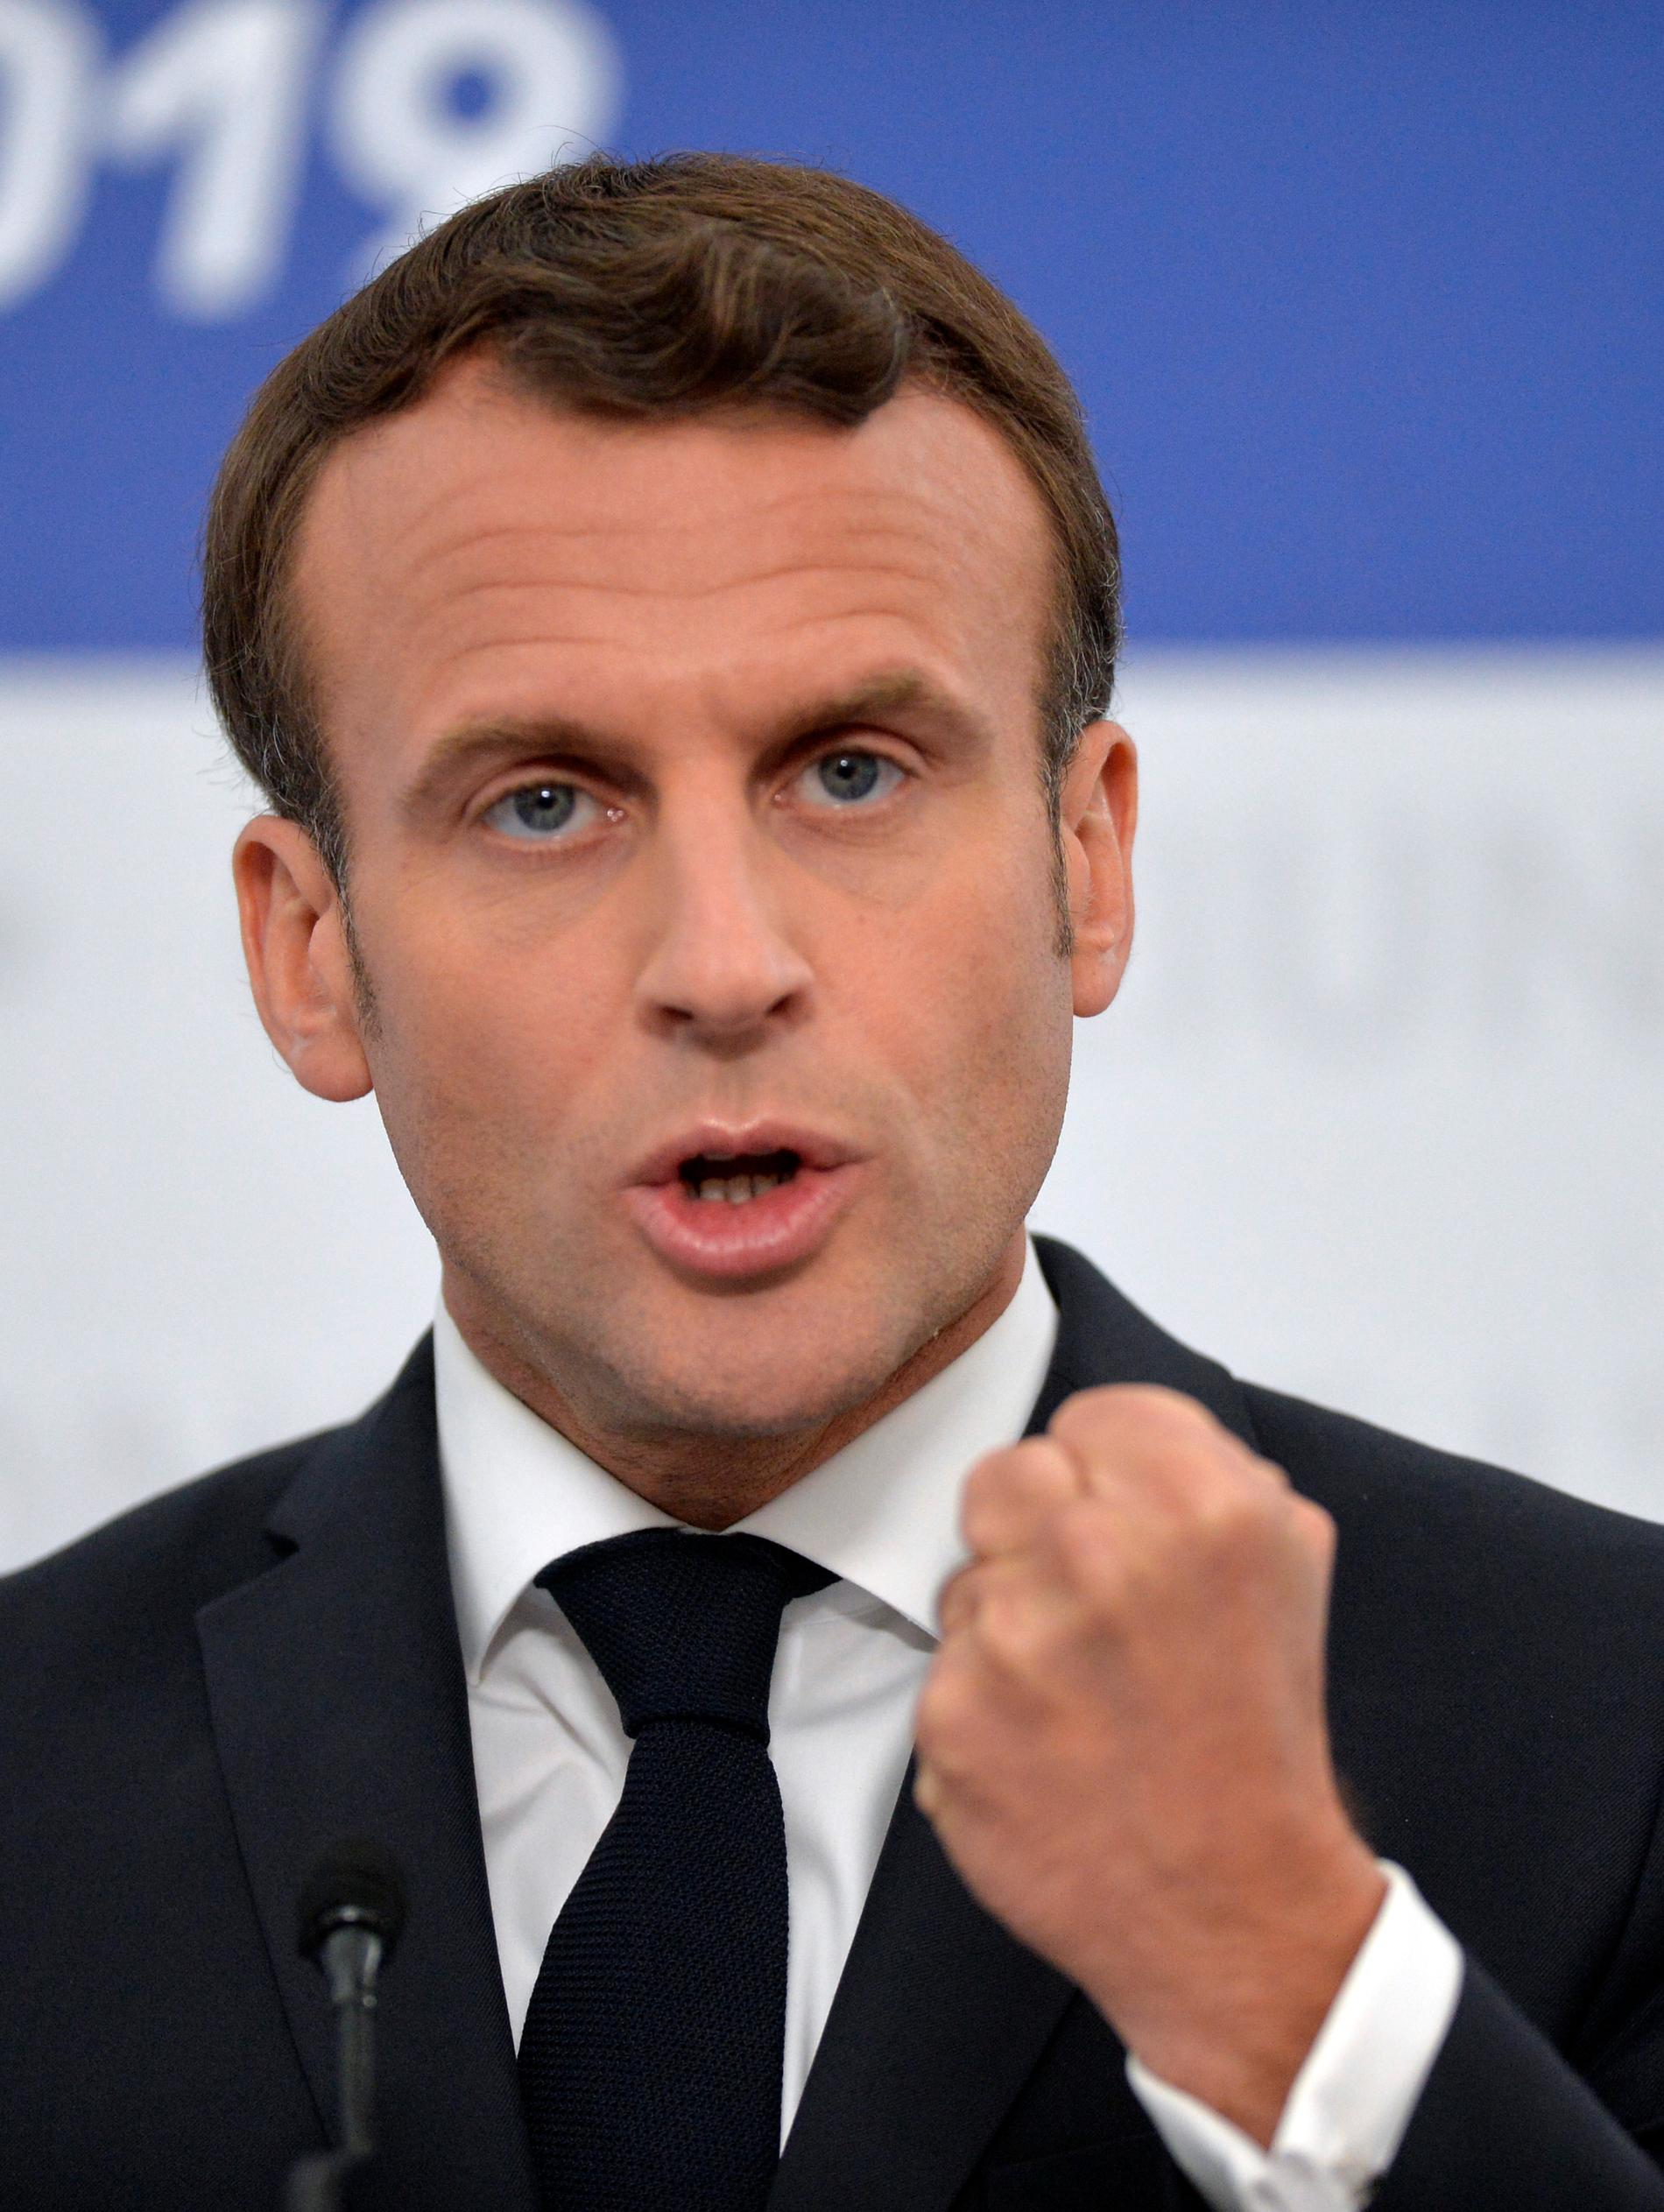 Frankrikes president Emmanuel Macron är en av de hårdaste kritikerna av systemet med ”Spitzenkandidaten”.